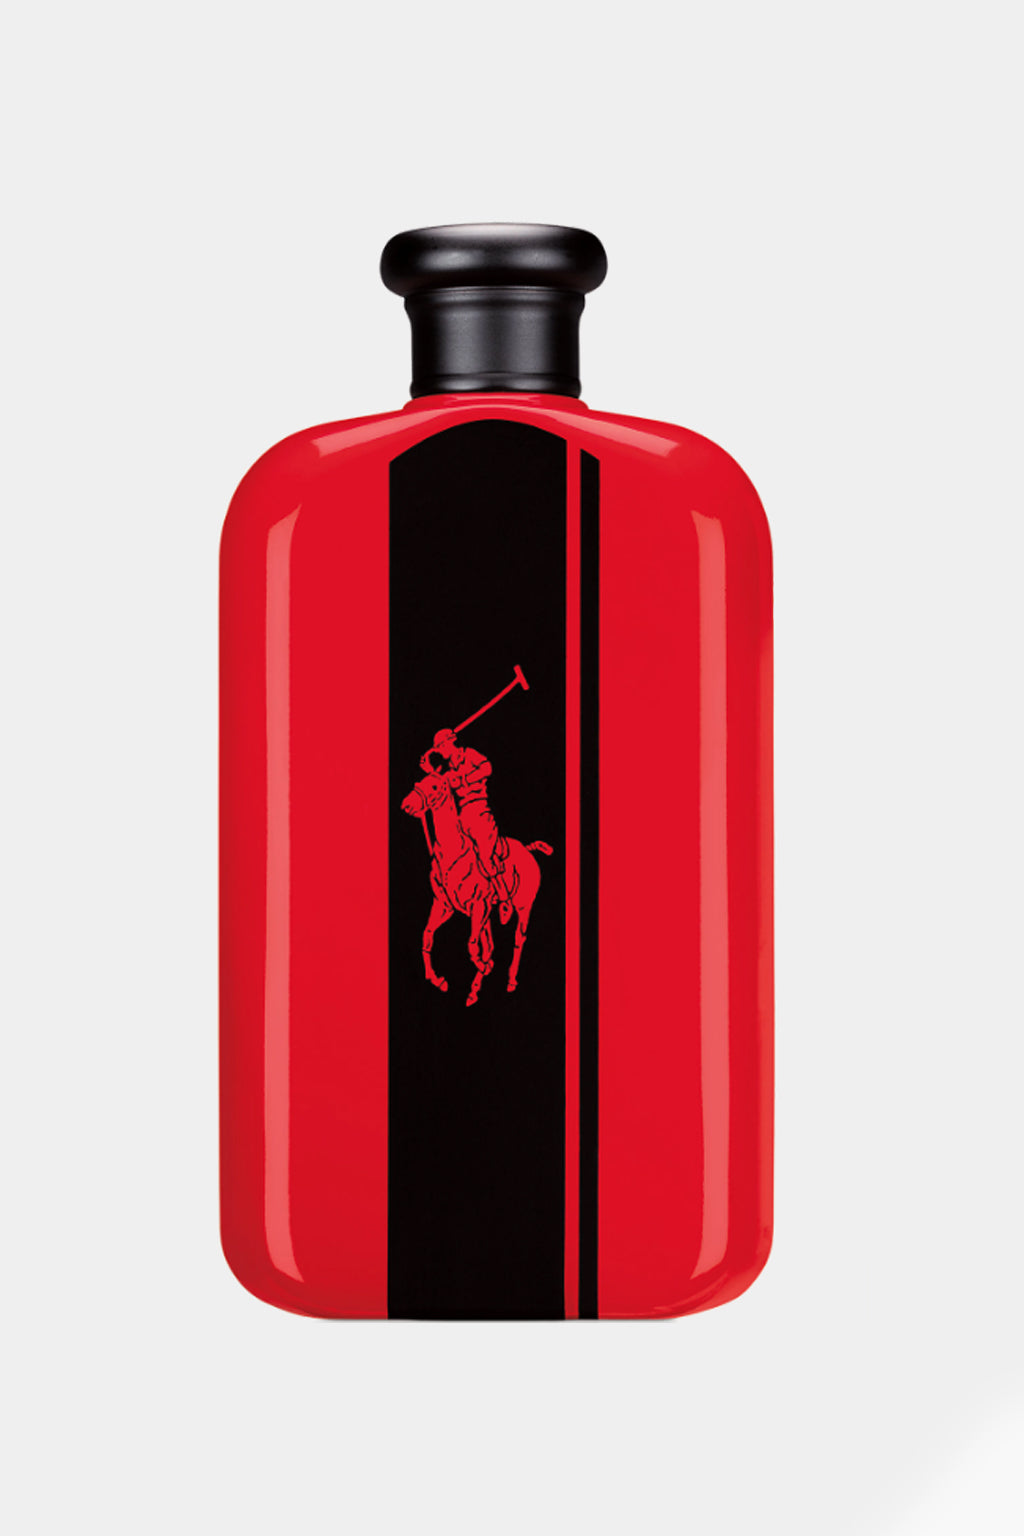 Ralph Lauren - Polo Red Eau de Parfum